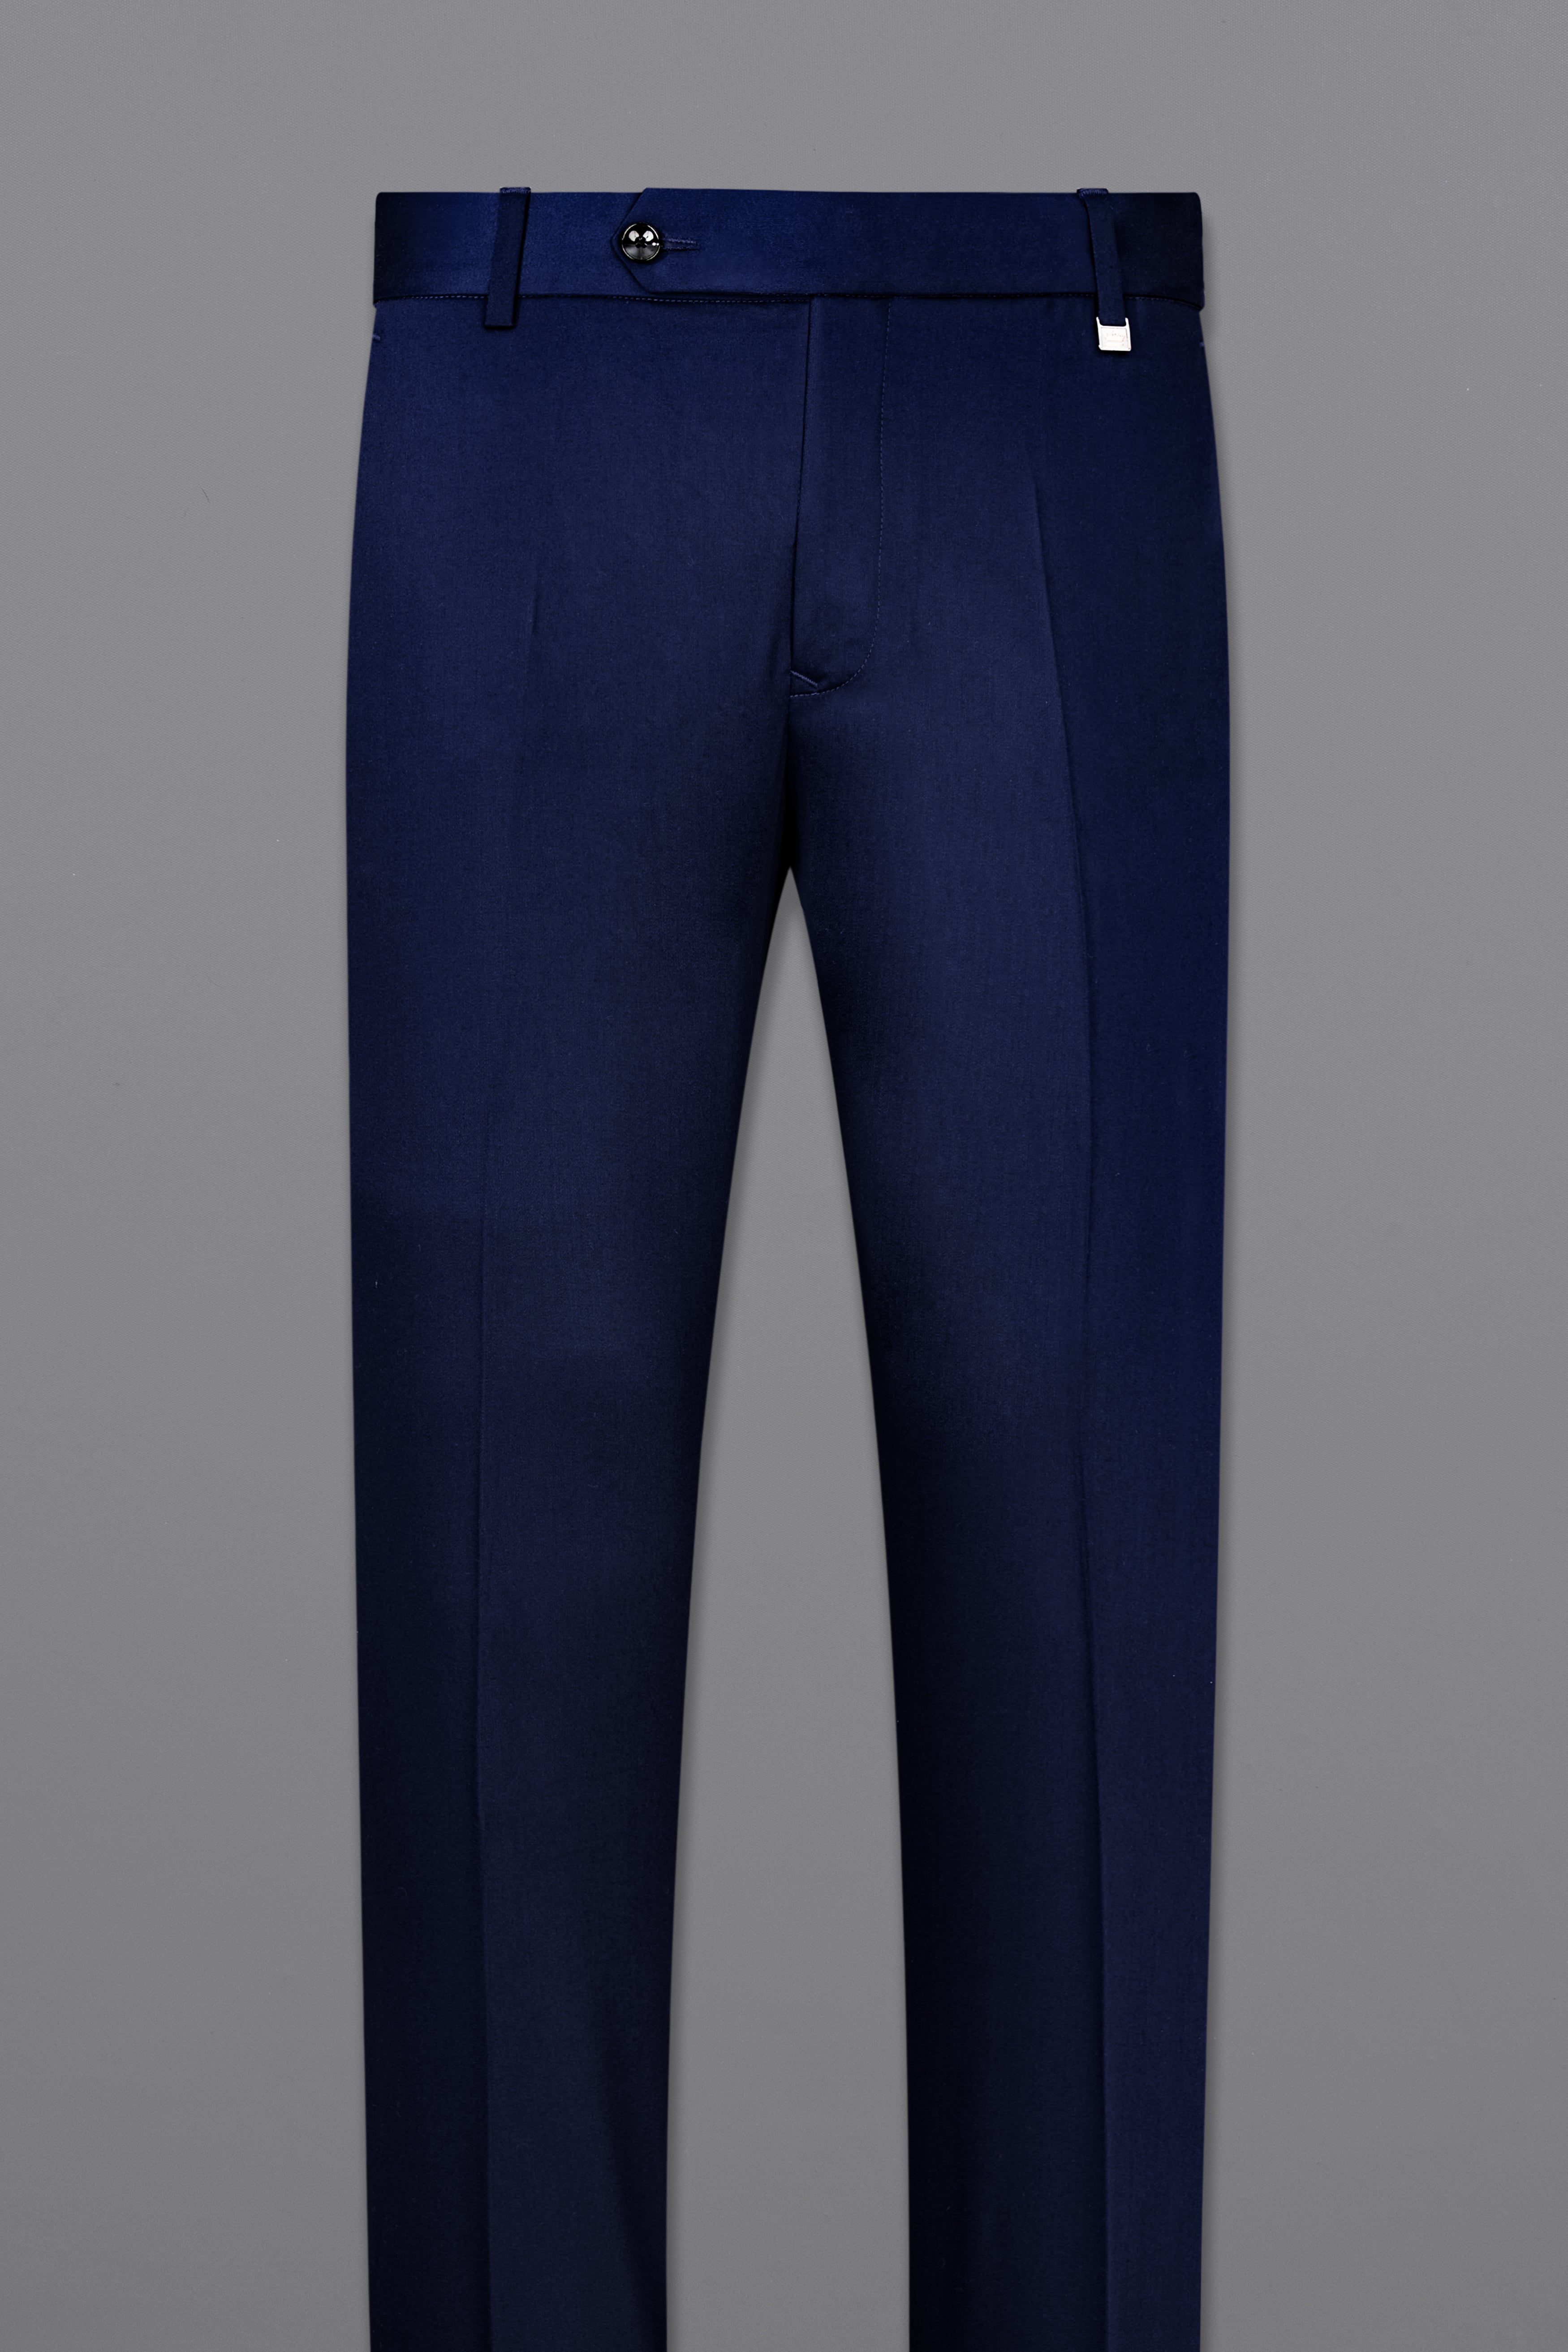 Three Piece Dark Blue Solid Formal Suit - Cabbot